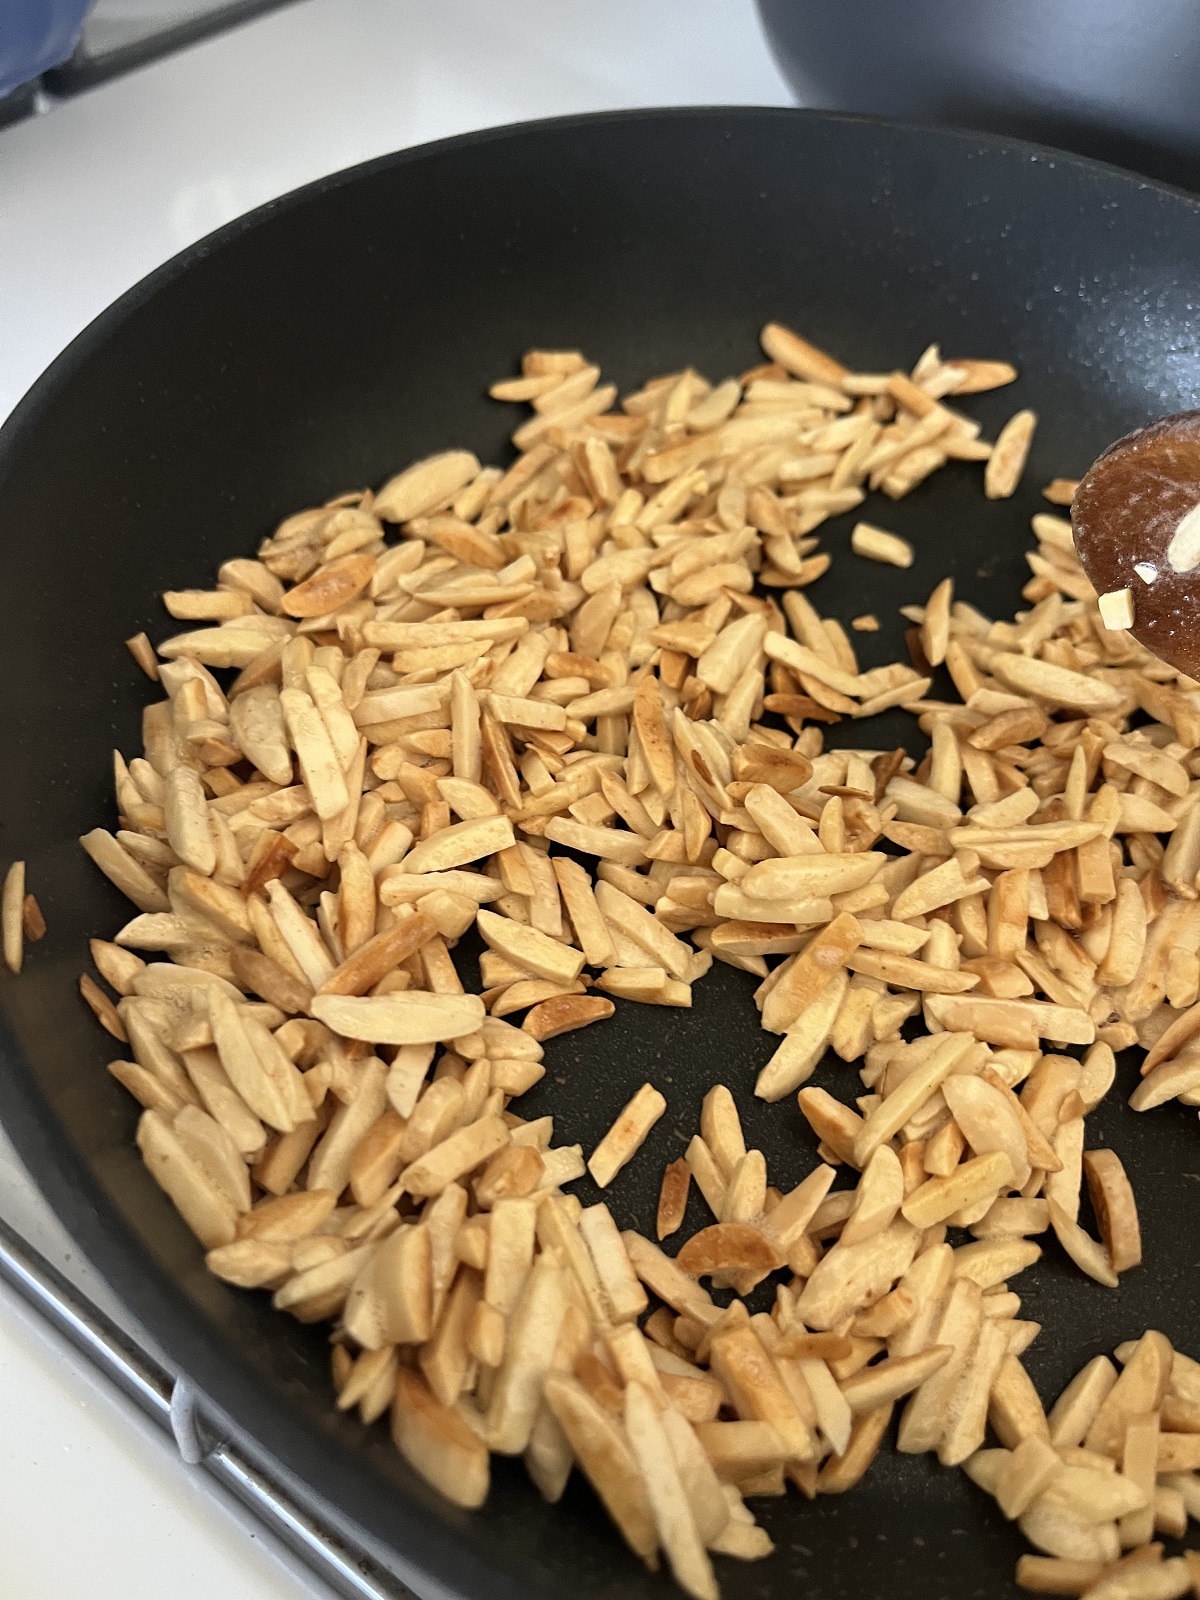 Frying-slivered-almonds.jpeg